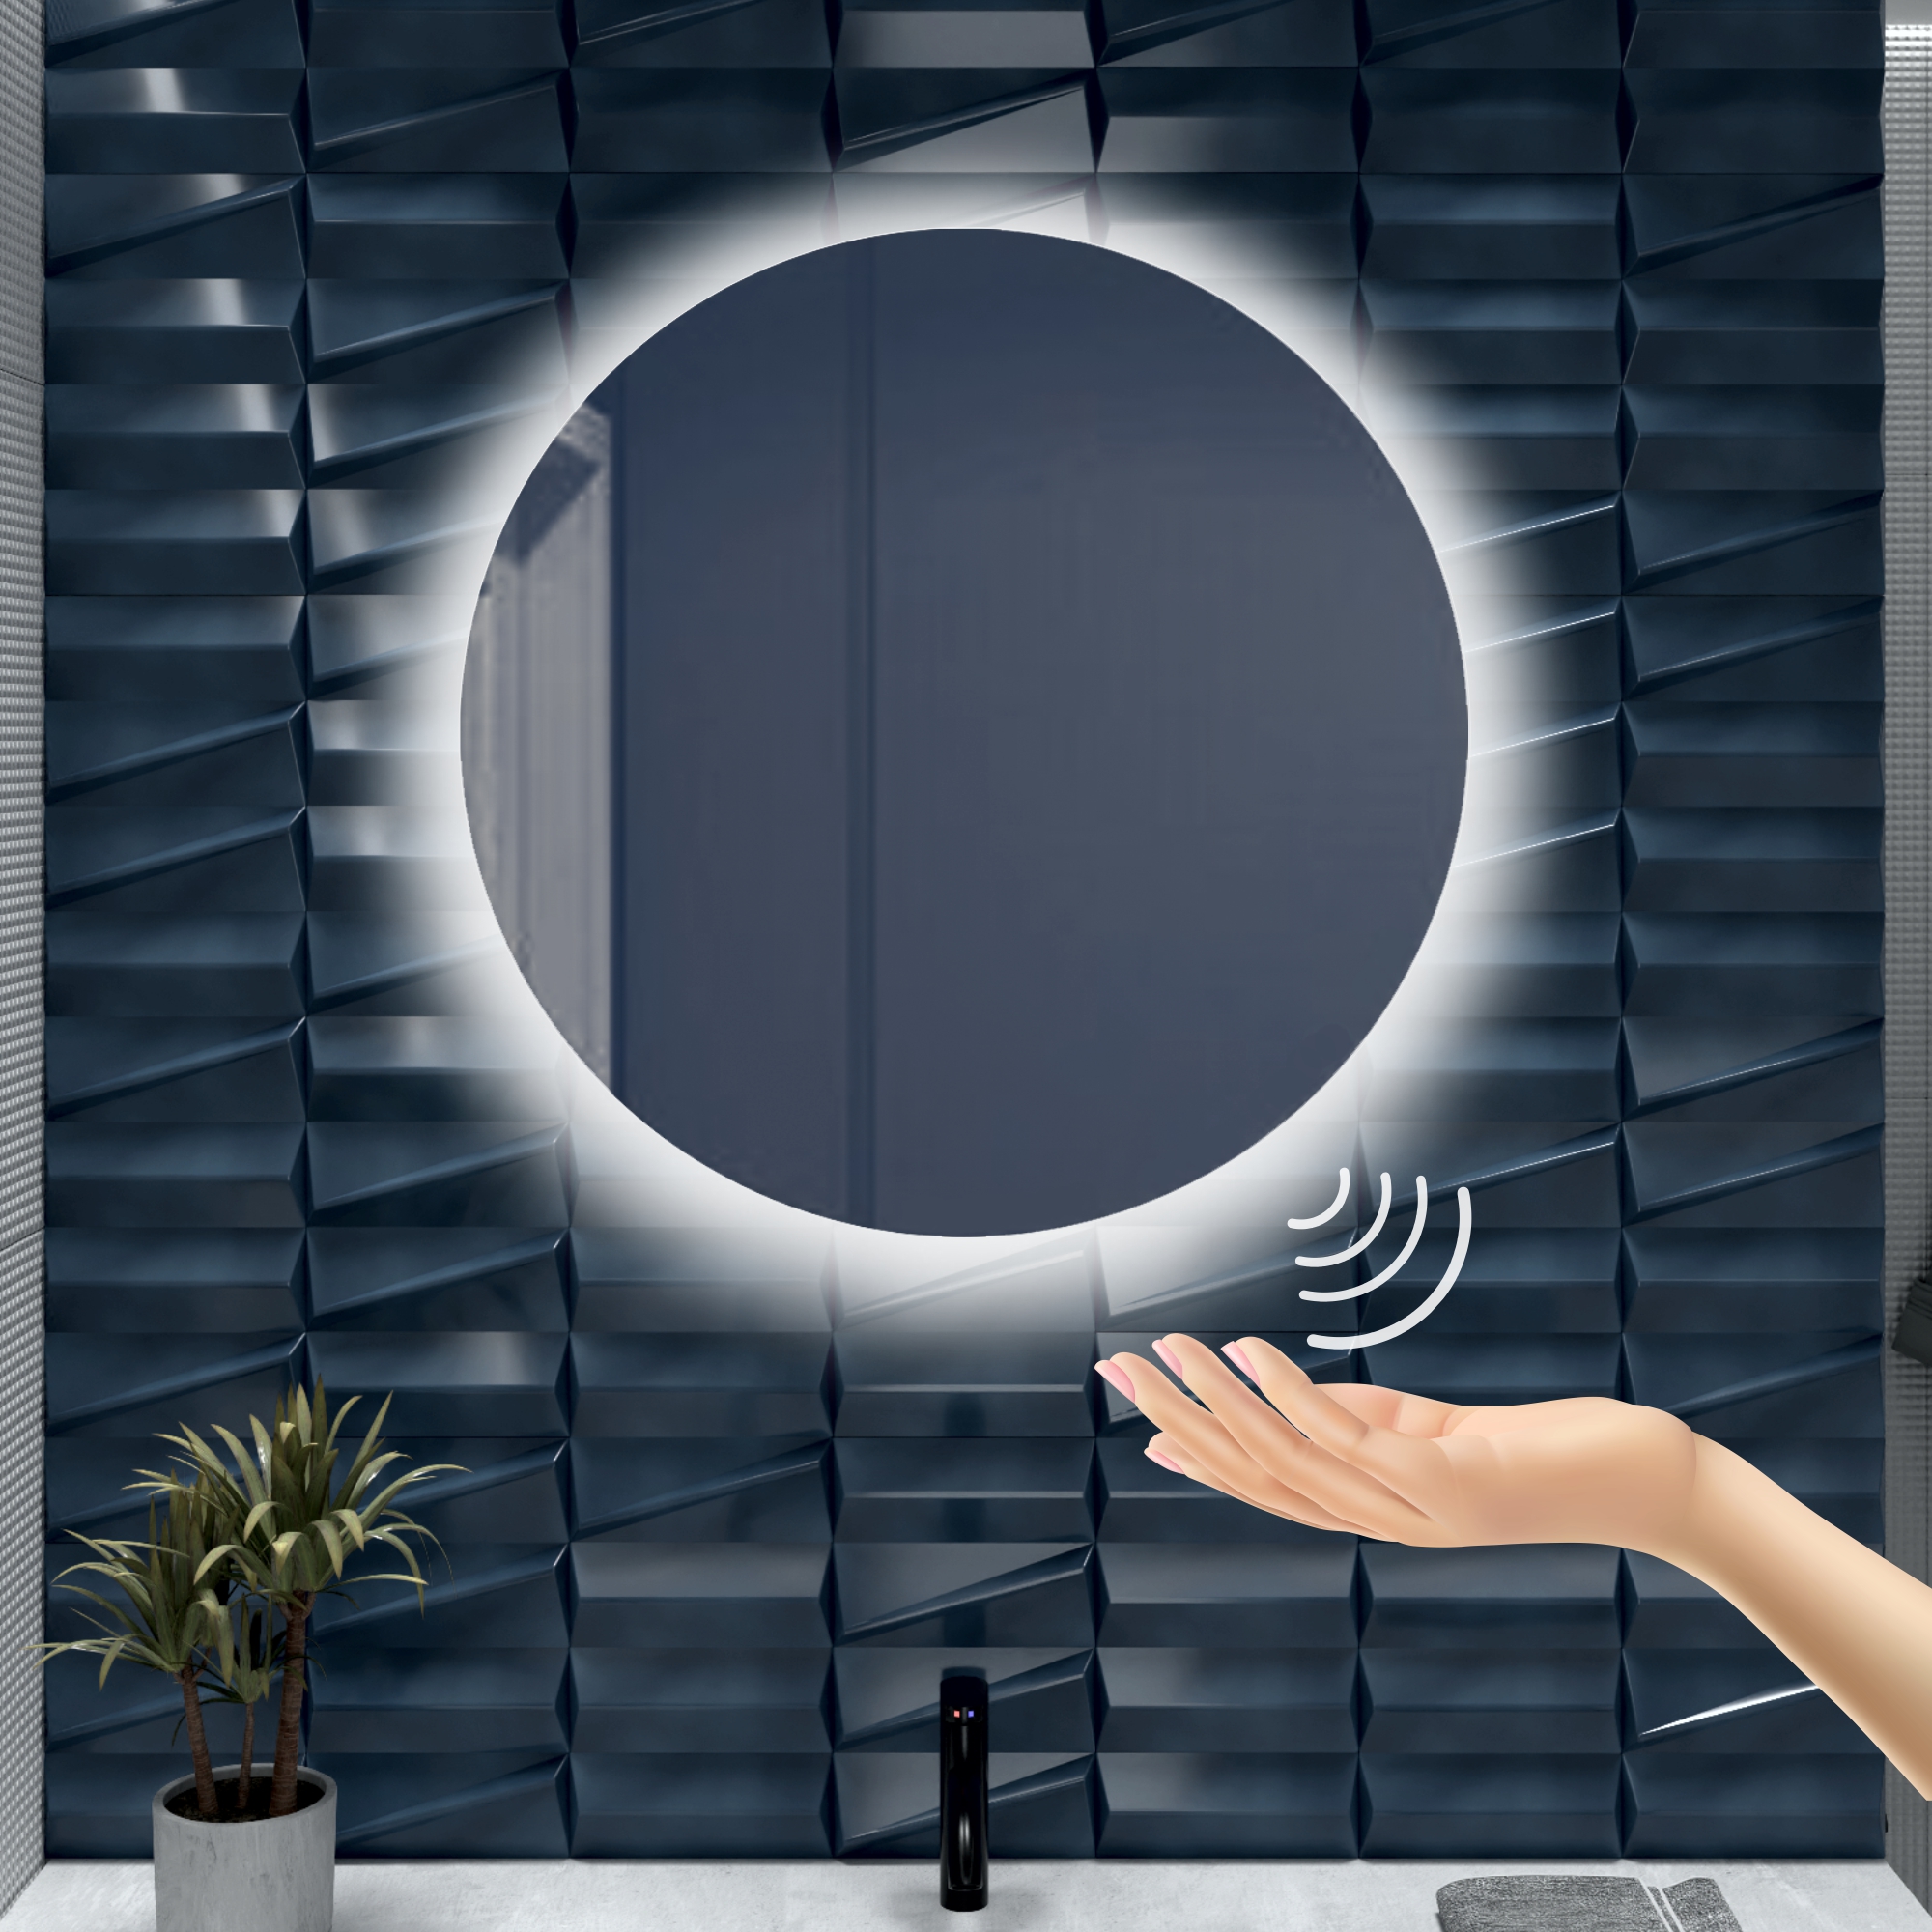 Зеркало для ванной Alfa Mirrors с холодной подсветкой 6500К круглое 90см, арт. Na-9Vzd зеркало для ванной alfa mirrors с холодной подсветкой 6500к круглое 40см арт na 4vzh